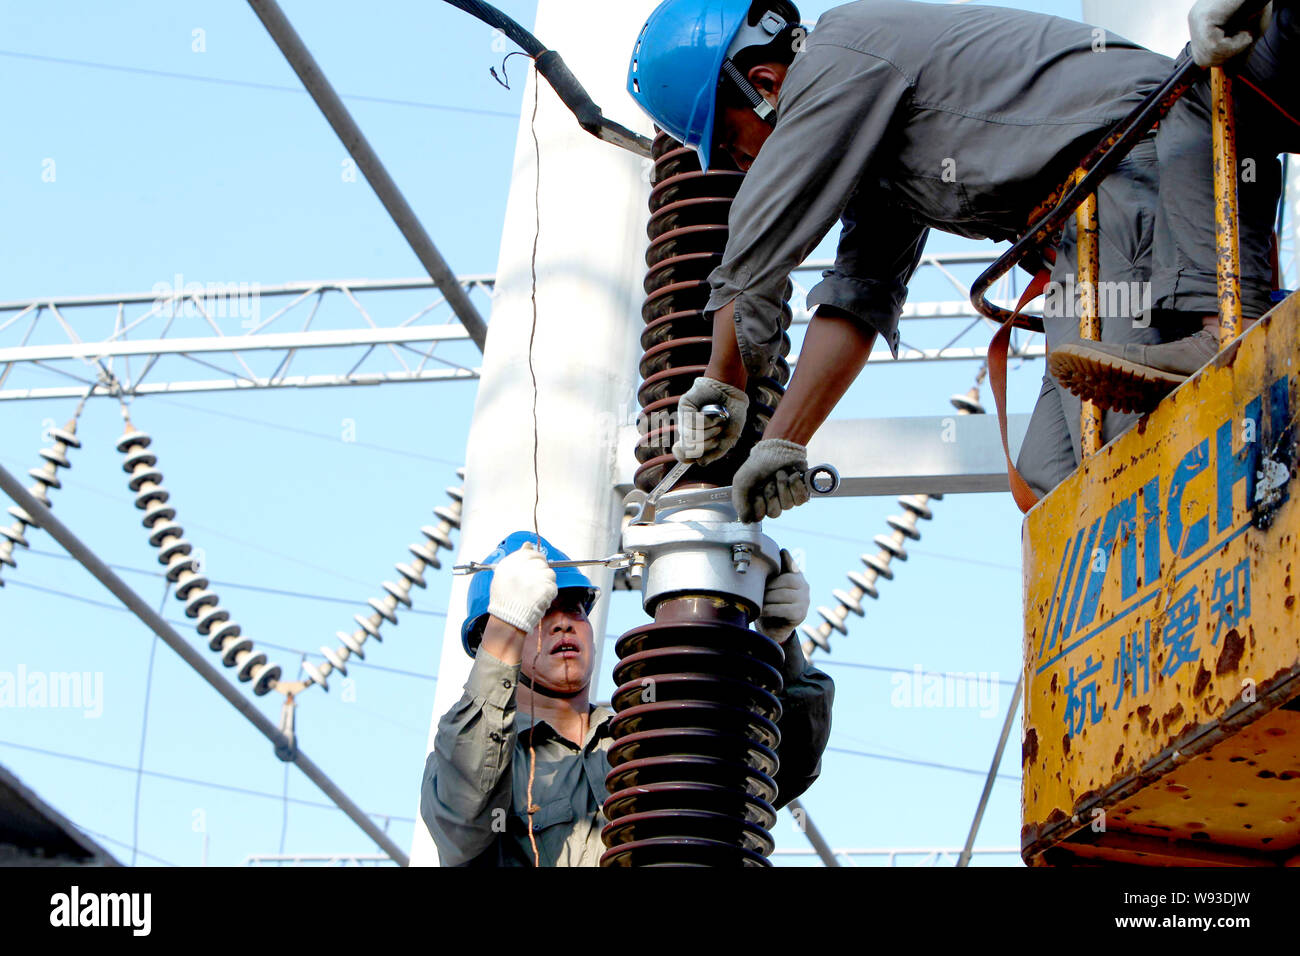 Les électriciens chinois de la State Grid Corporation of China vérifier et réparer les appareils électriques à un poste de transformation Yichang city, le centre de Menton Banque D'Images